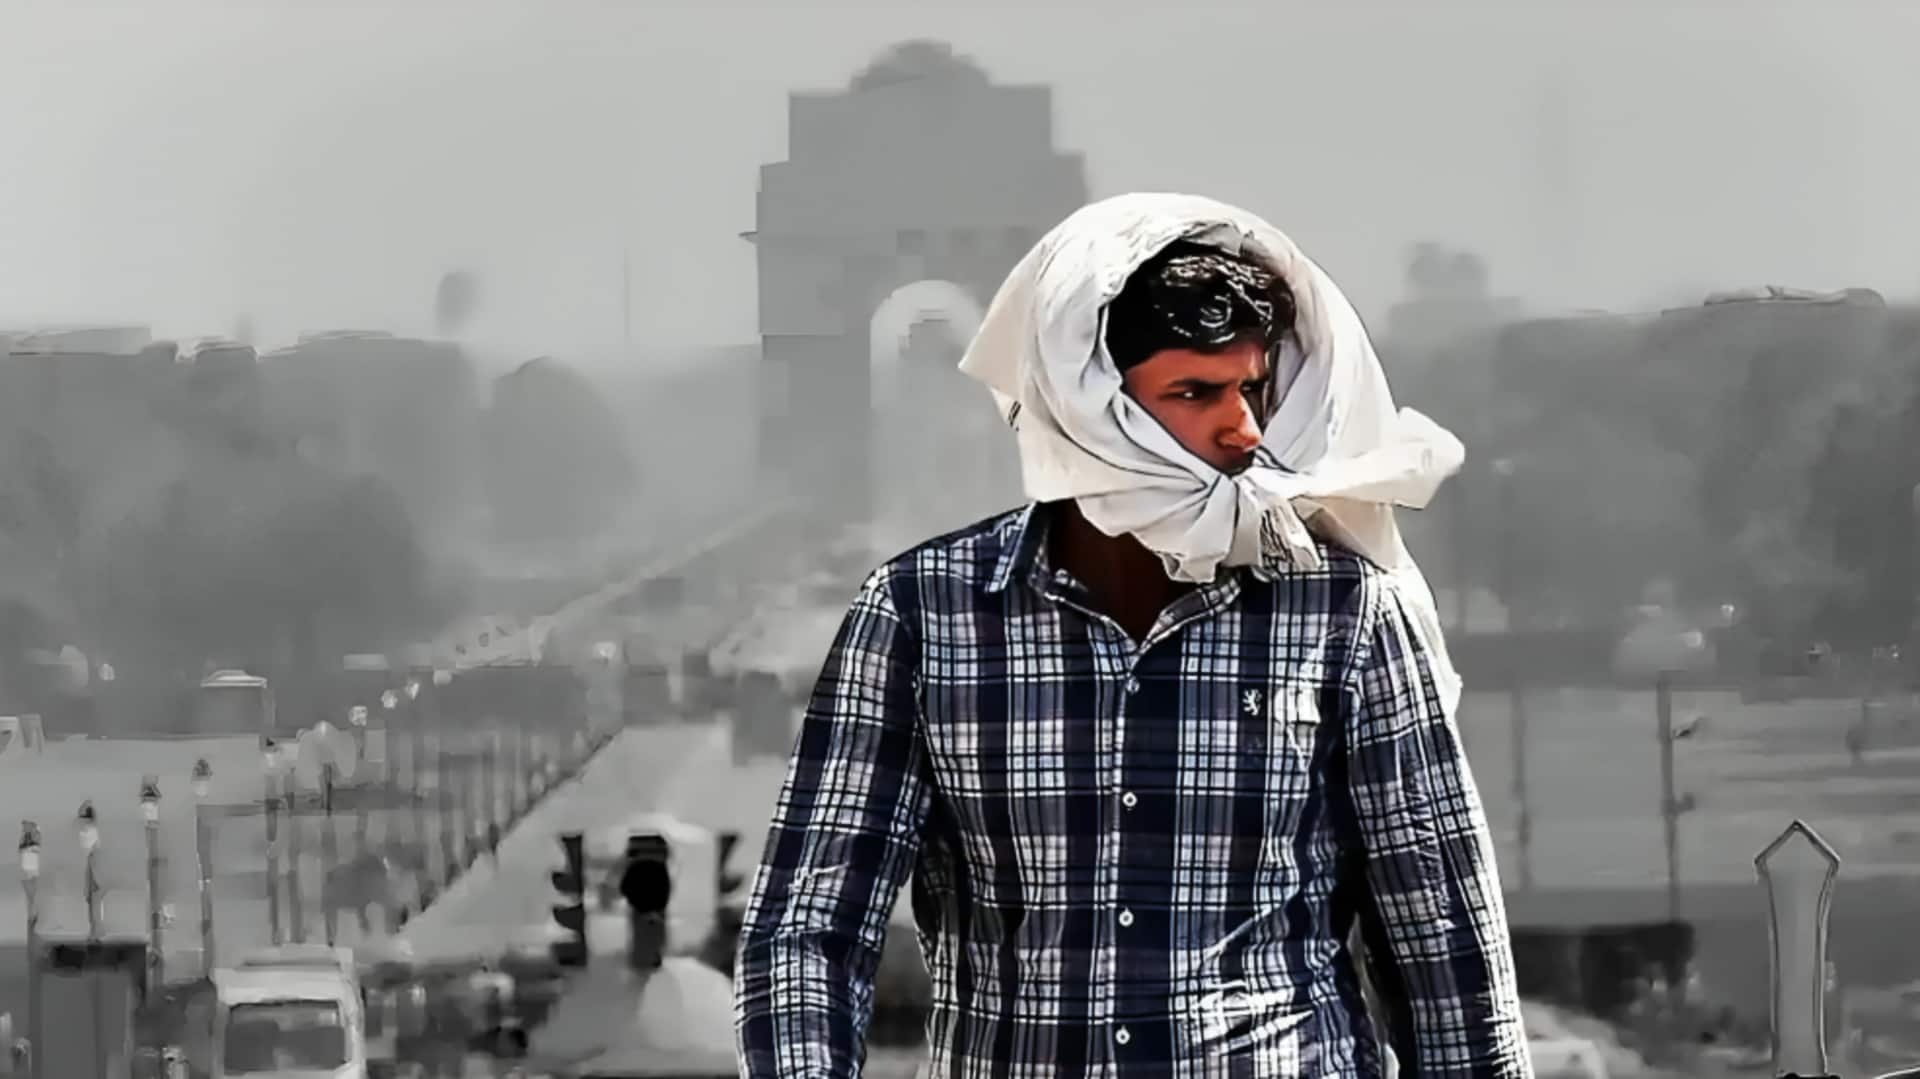 दिल्ली समेत कई राज्यों में बारिश की संभावना, जानें कहां होगी गर्मी